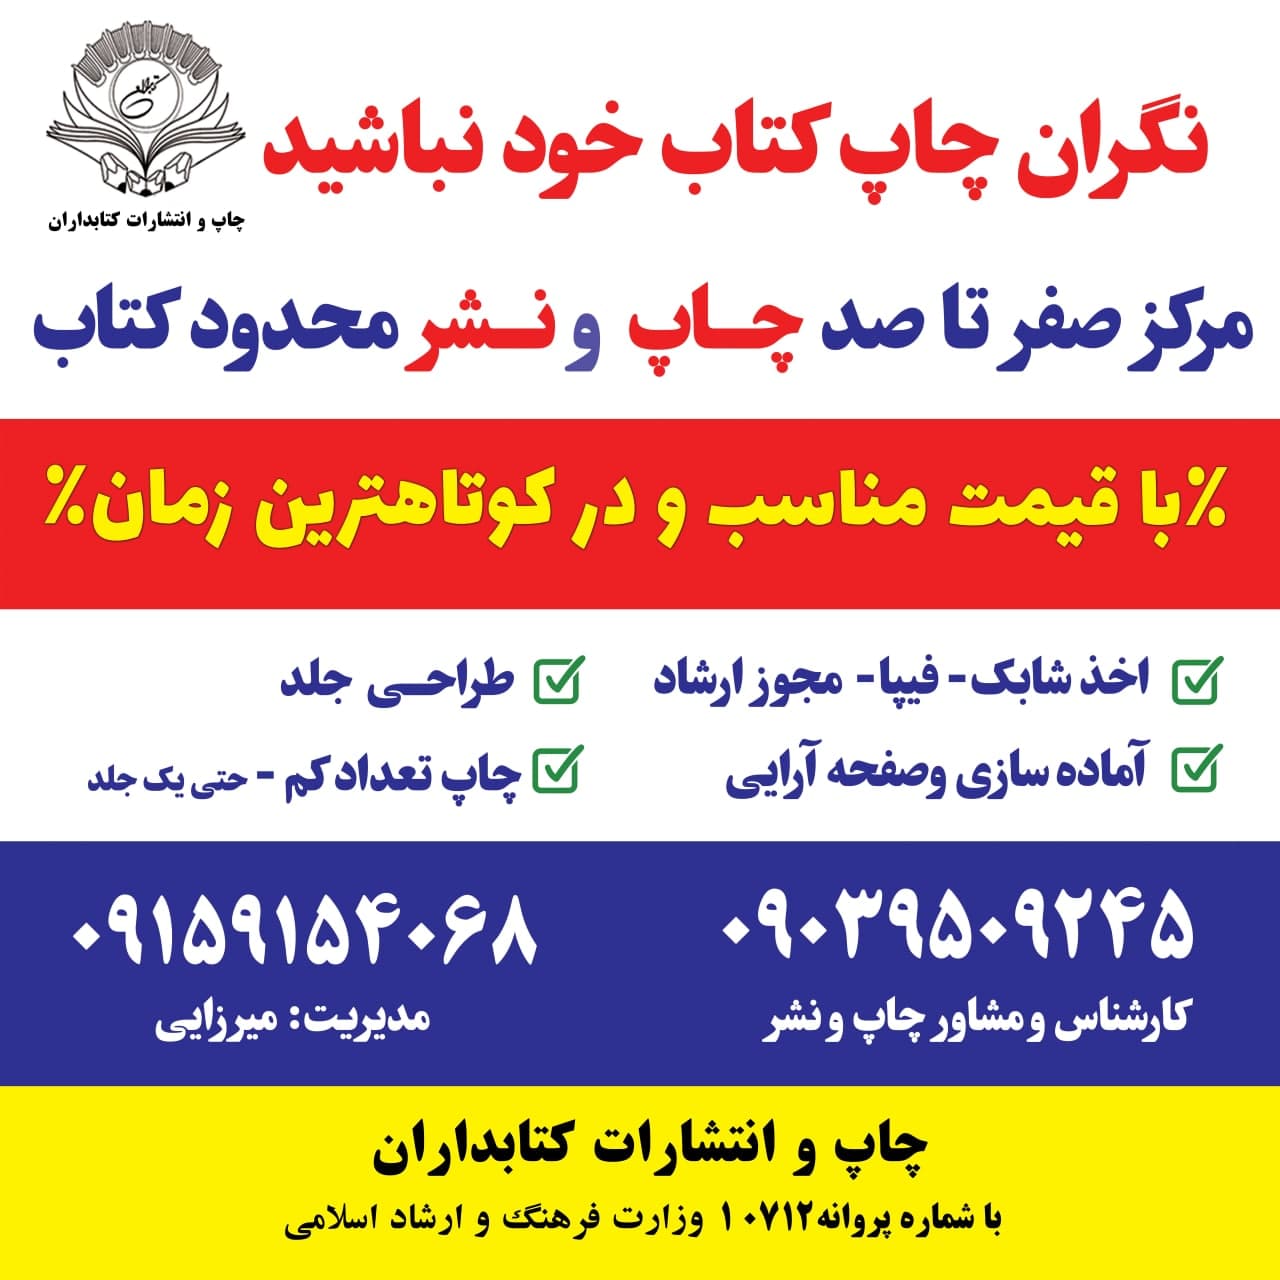 چاپ کتاب در تیراژ محدود با مجوز ارشاد 09159154068 در مشهد و تمام کشور